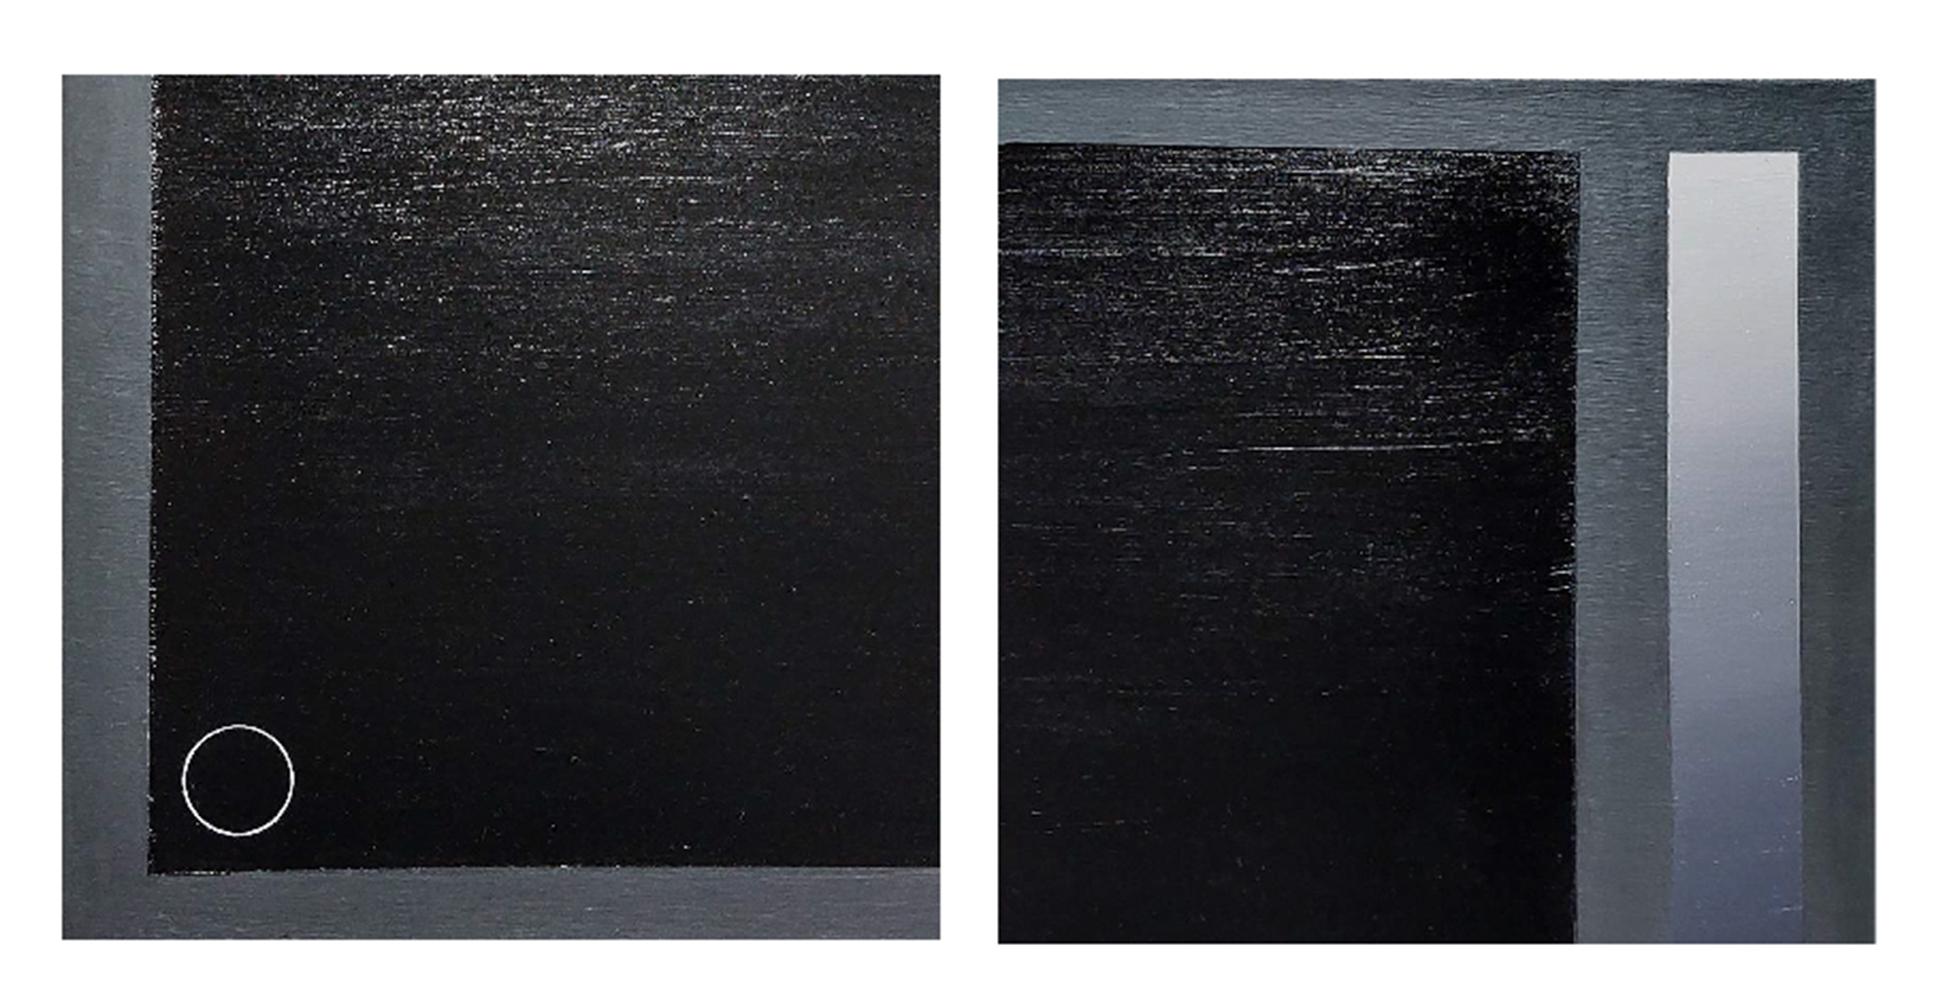 Blau getönter Würfel und schwarzer Glitzereimer, von Jose Ricardo Contreras González
Aus der Serie The Light
Acryl und Öl auf Leinwand
Gesamtgröße: 50 H cm. x 80 B cm.
Individuelle Größe: 50 H cm. x 40 B cm.
Montiert auf einem Strecher 

Diese Serie